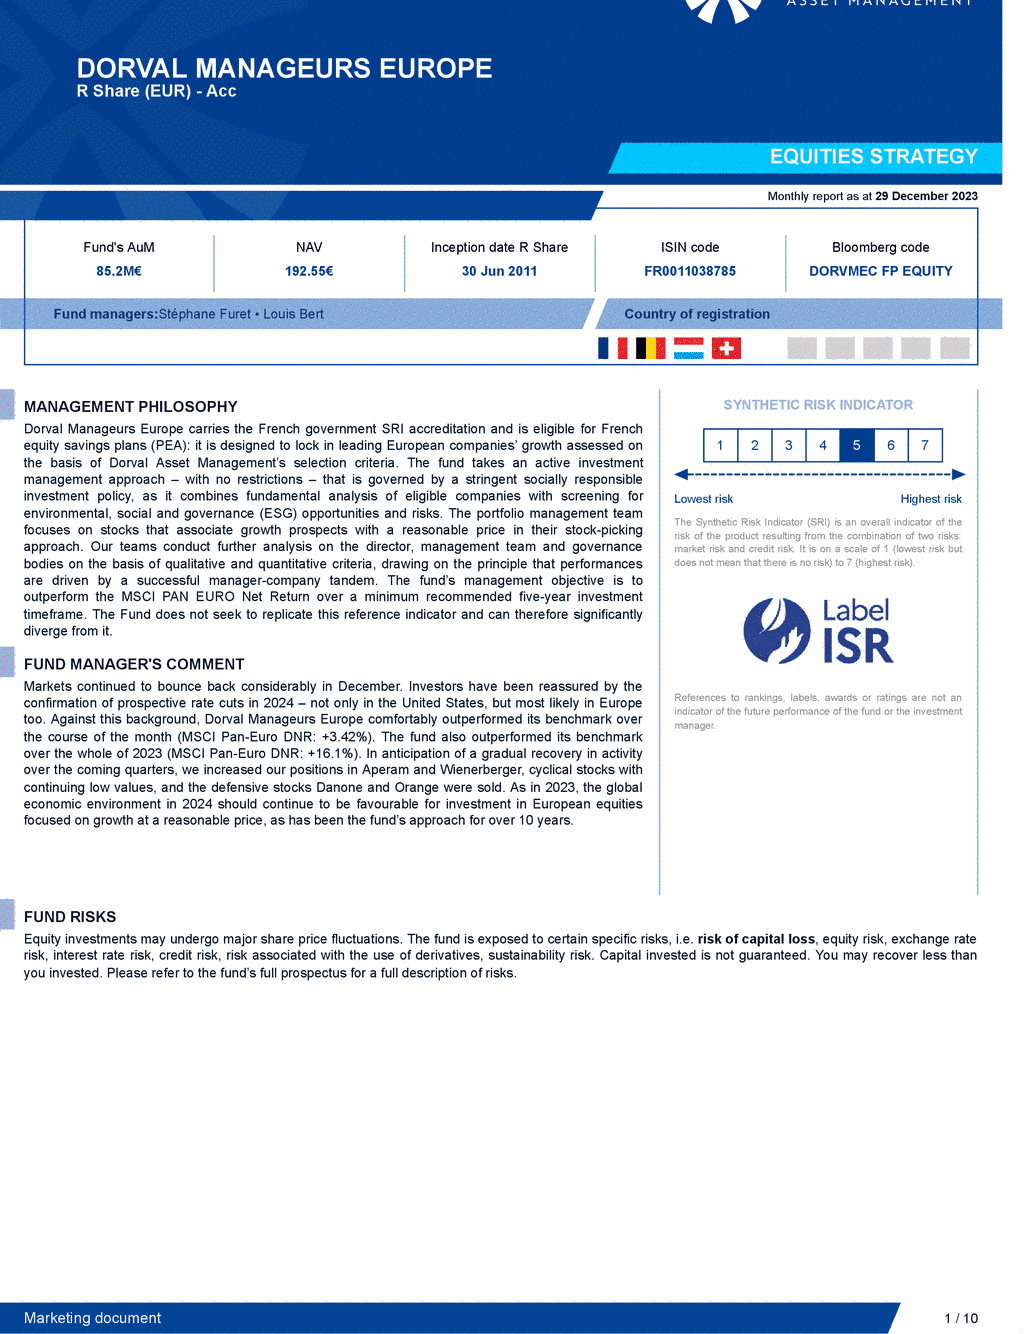 Reporting DORVAL MANAGEURS EUROPE - 29/12/2023 - Anglais